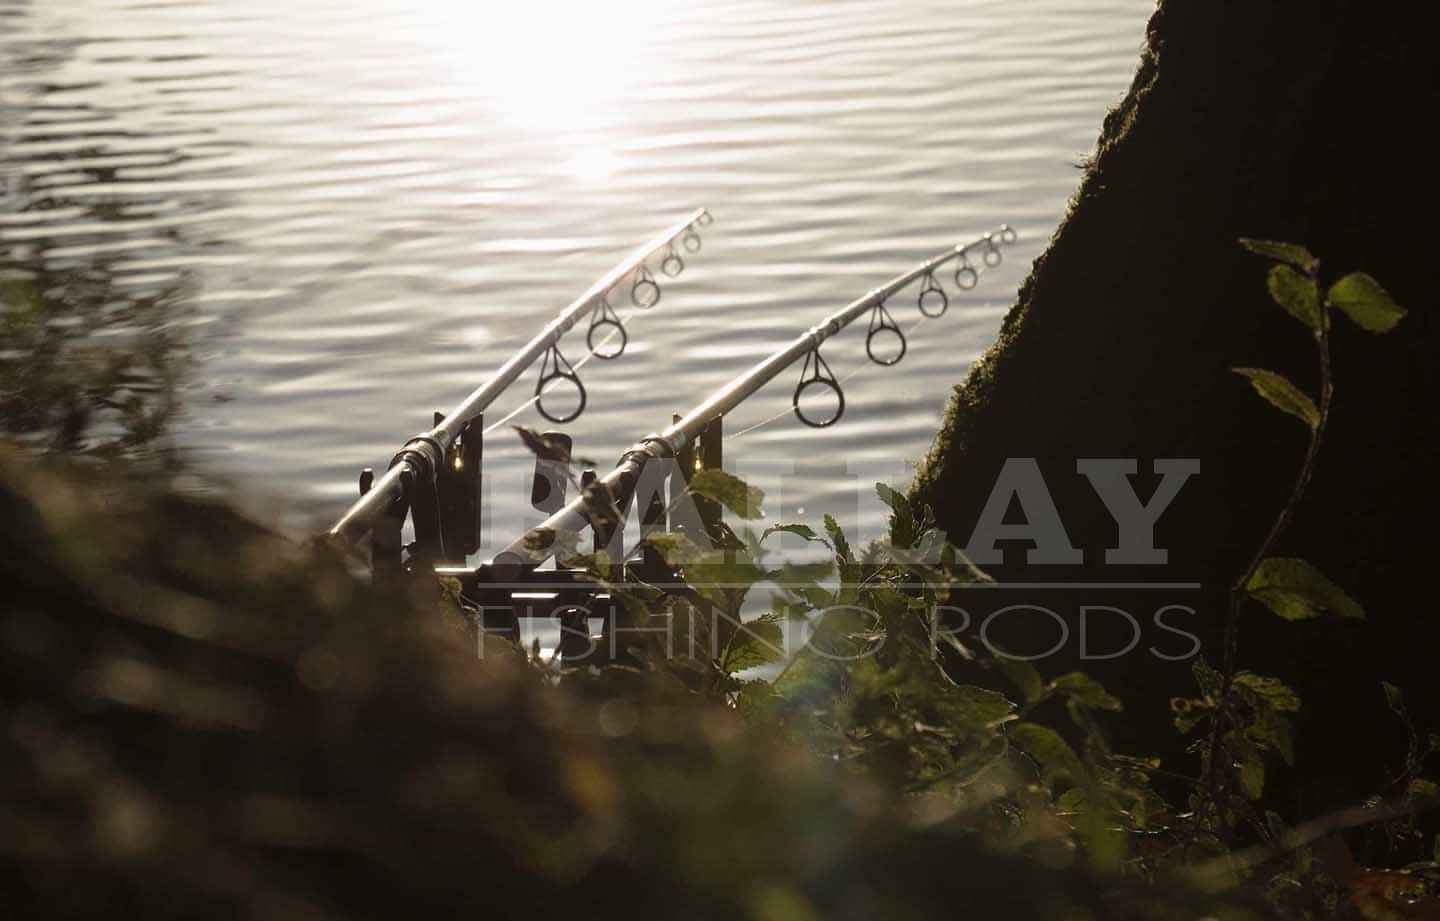 Ballayrods.com - Rybárske prúty na mieru